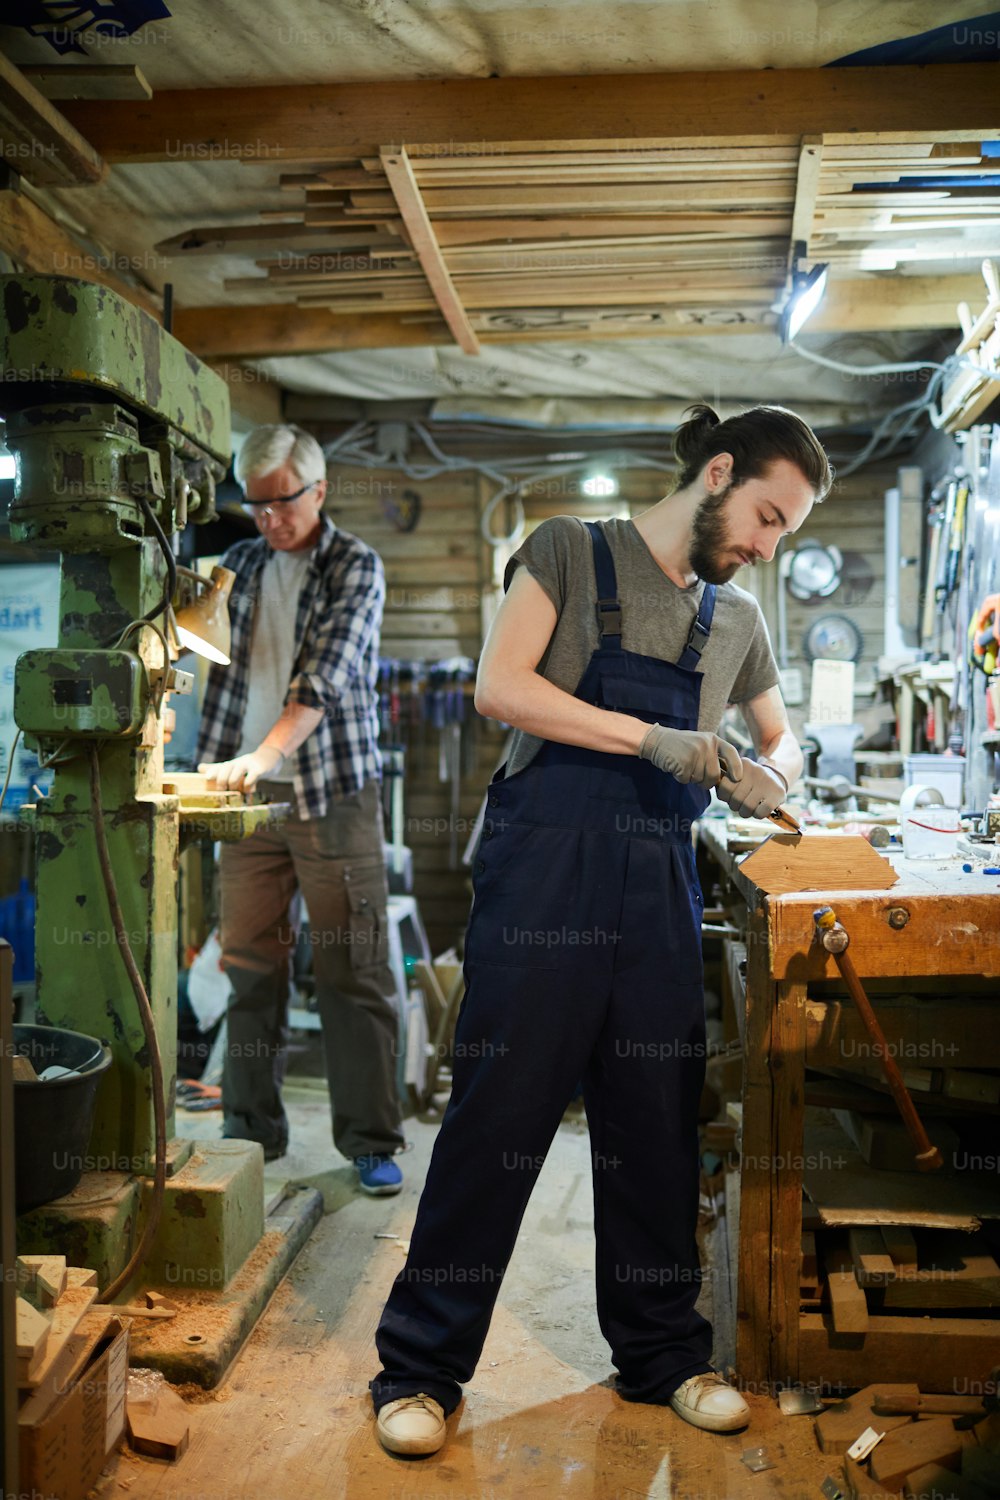 Dos maestros carpinteros procesan piezas de madera con herramientas manuales y a máquina